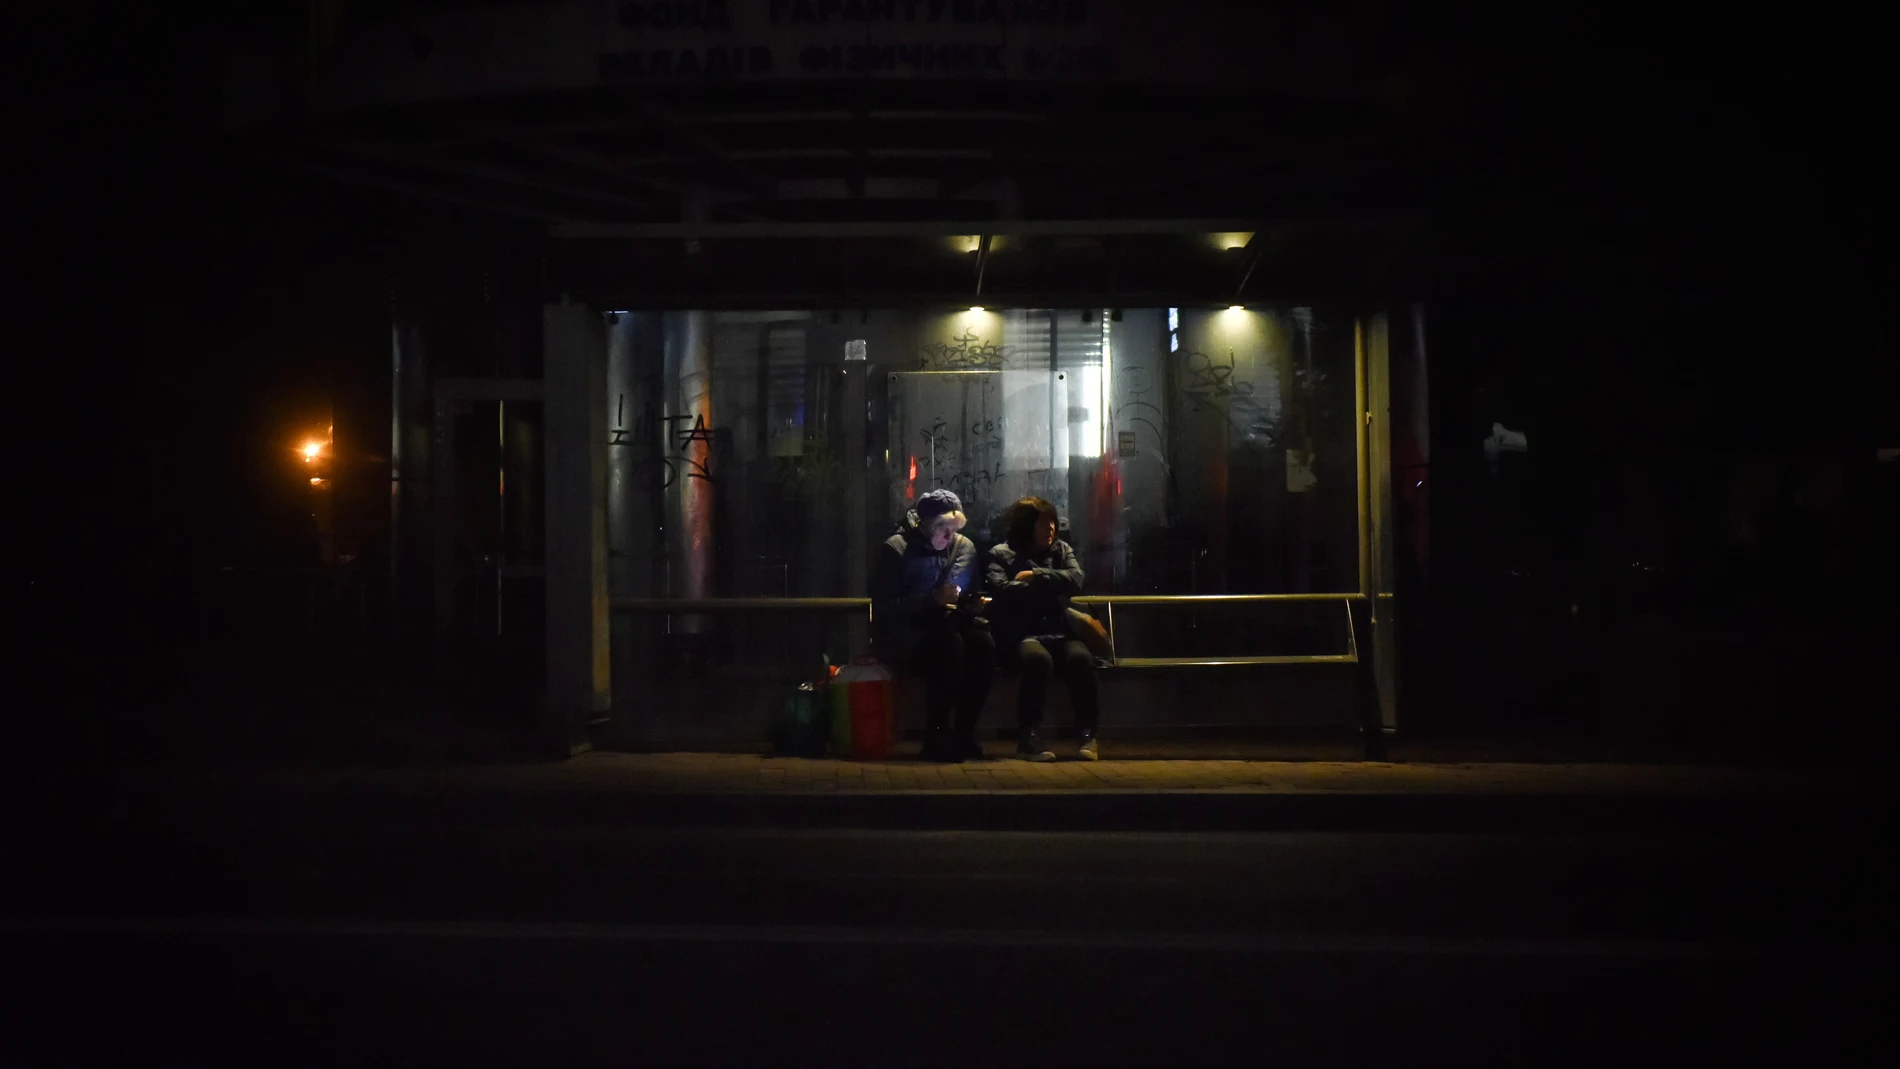 Dos ucranianos sentados en la parada de autobús en la oscuridad este 22 de octubre en Kyiv